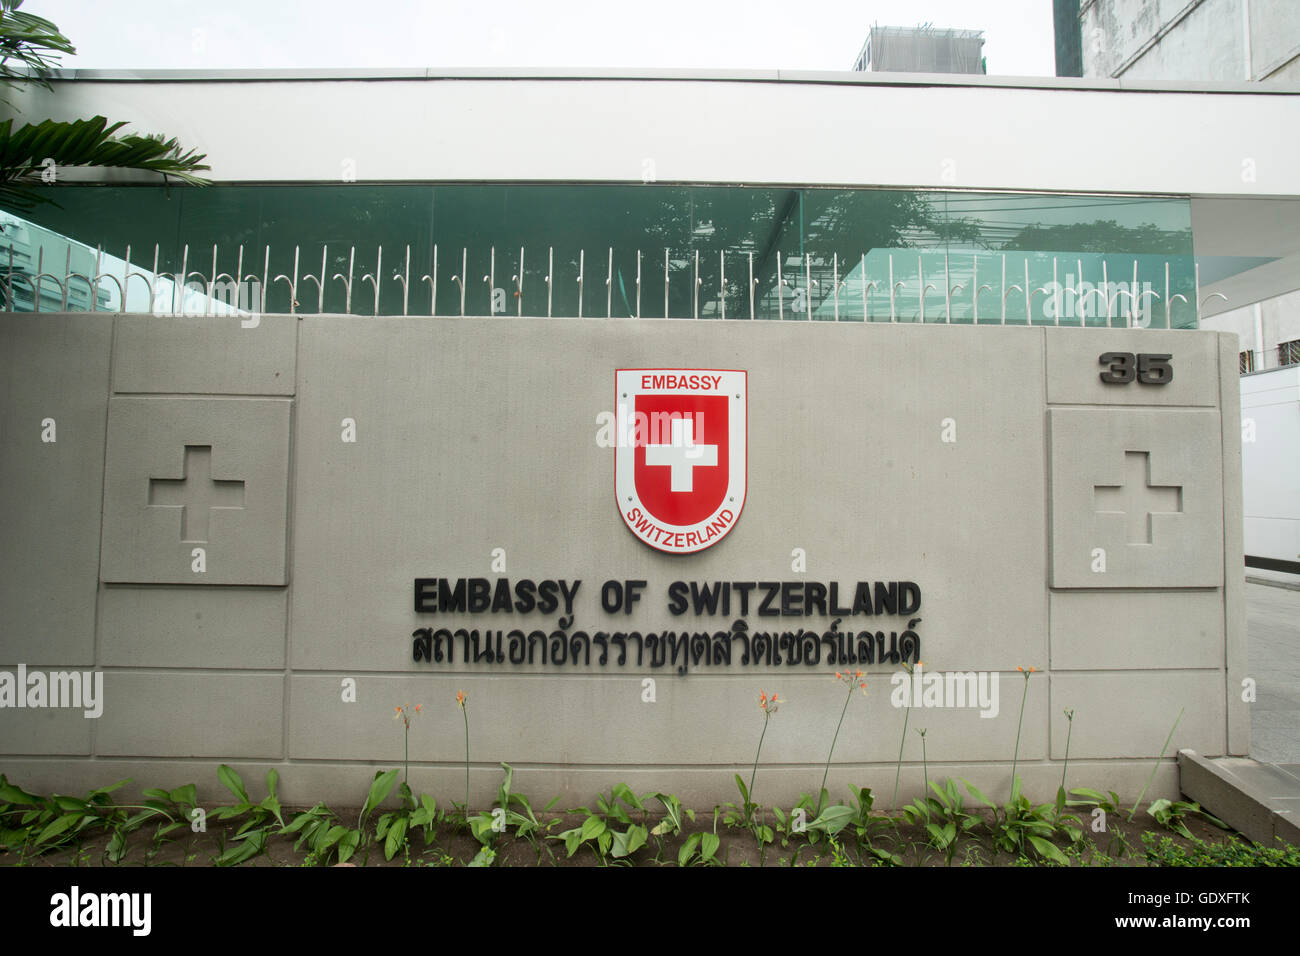 L'ambassade de Suisse à Bangkok dans la ville de Bangkok en Thaïlande en Southeastasia. Banque D'Images